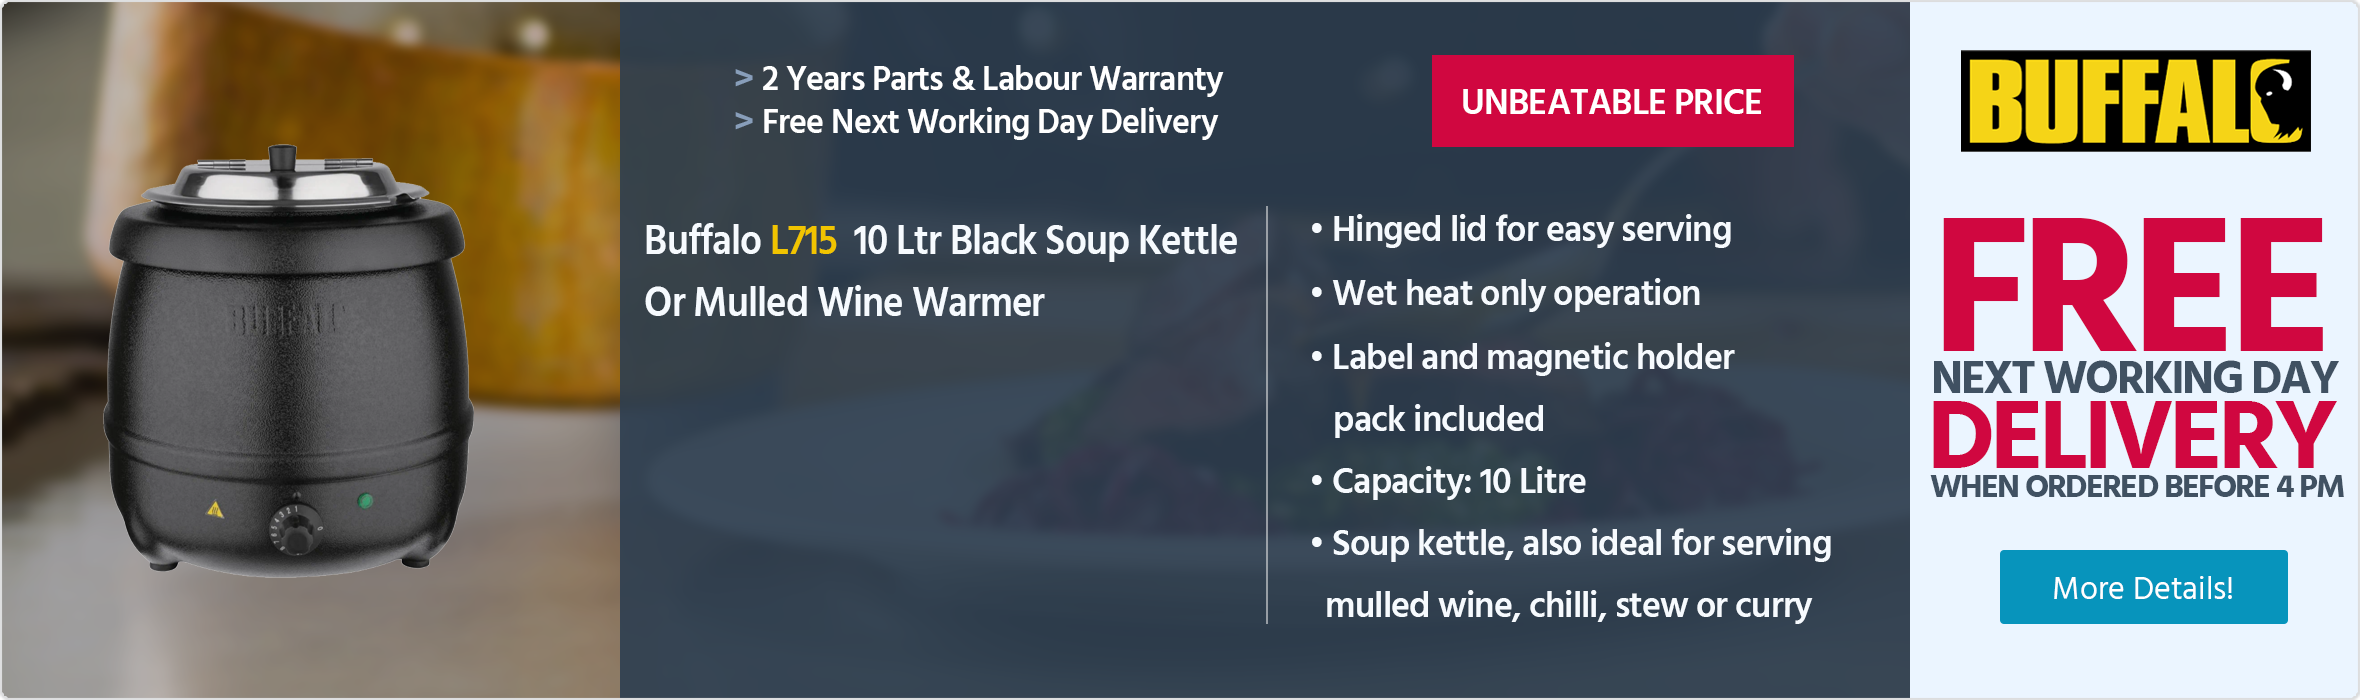 Buffalo L715 10 Ltr Black Soup Kettle / Mulled Wine Warmer